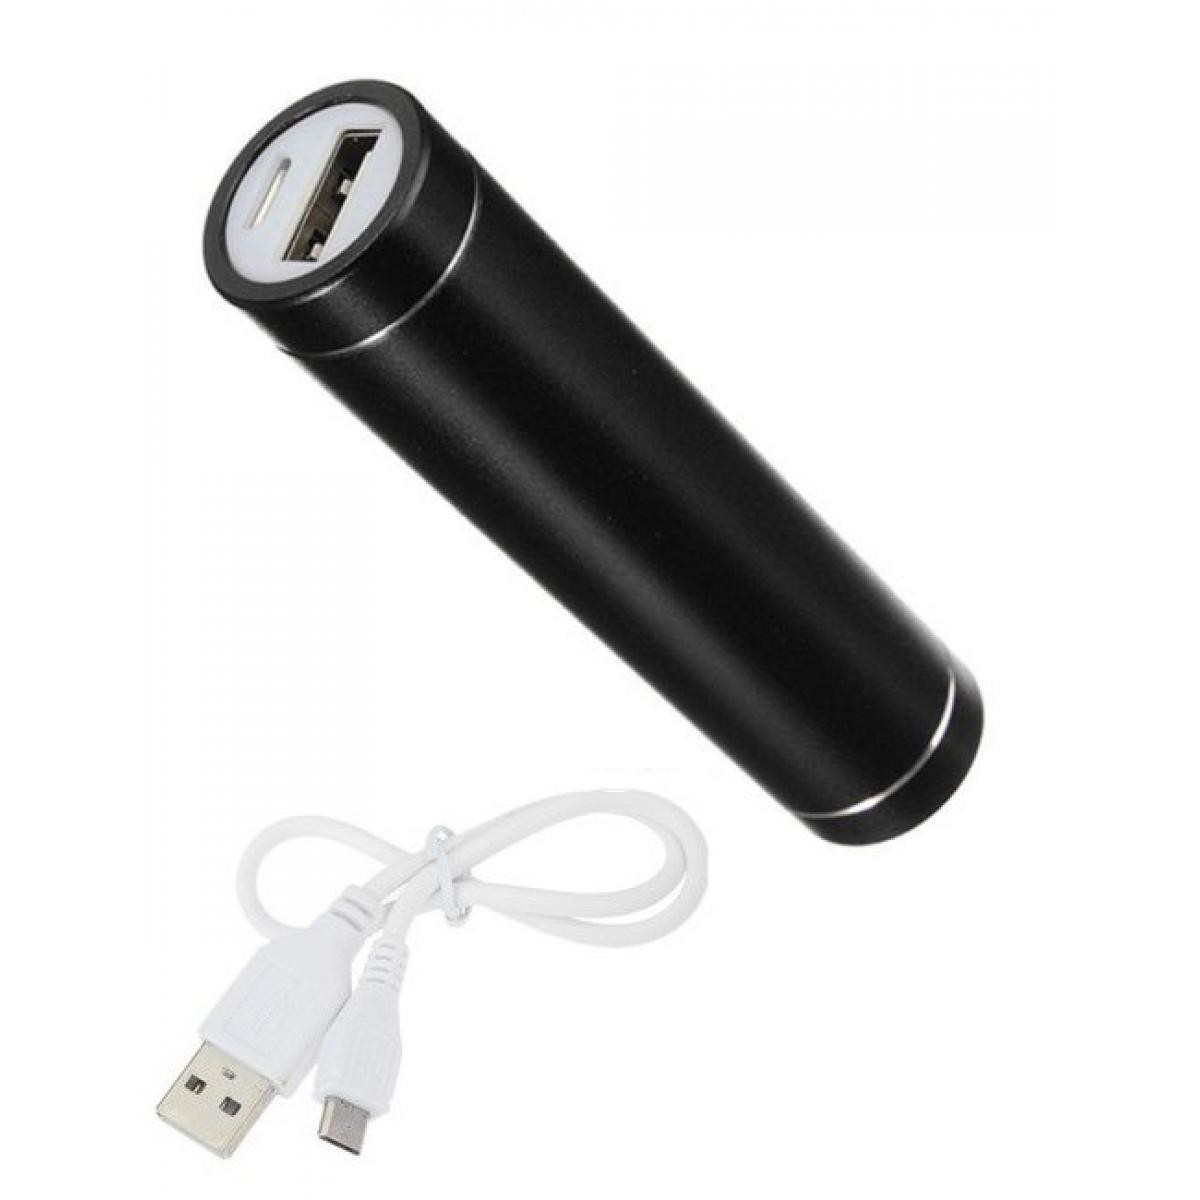 Shot - Batterie Chargeur Externe pour HUAWEI P smart Z Power Bank 2600mAh avec Cable USB/Mirco USB Secours Telephone (NOIR) - Chargeur secteur téléphone